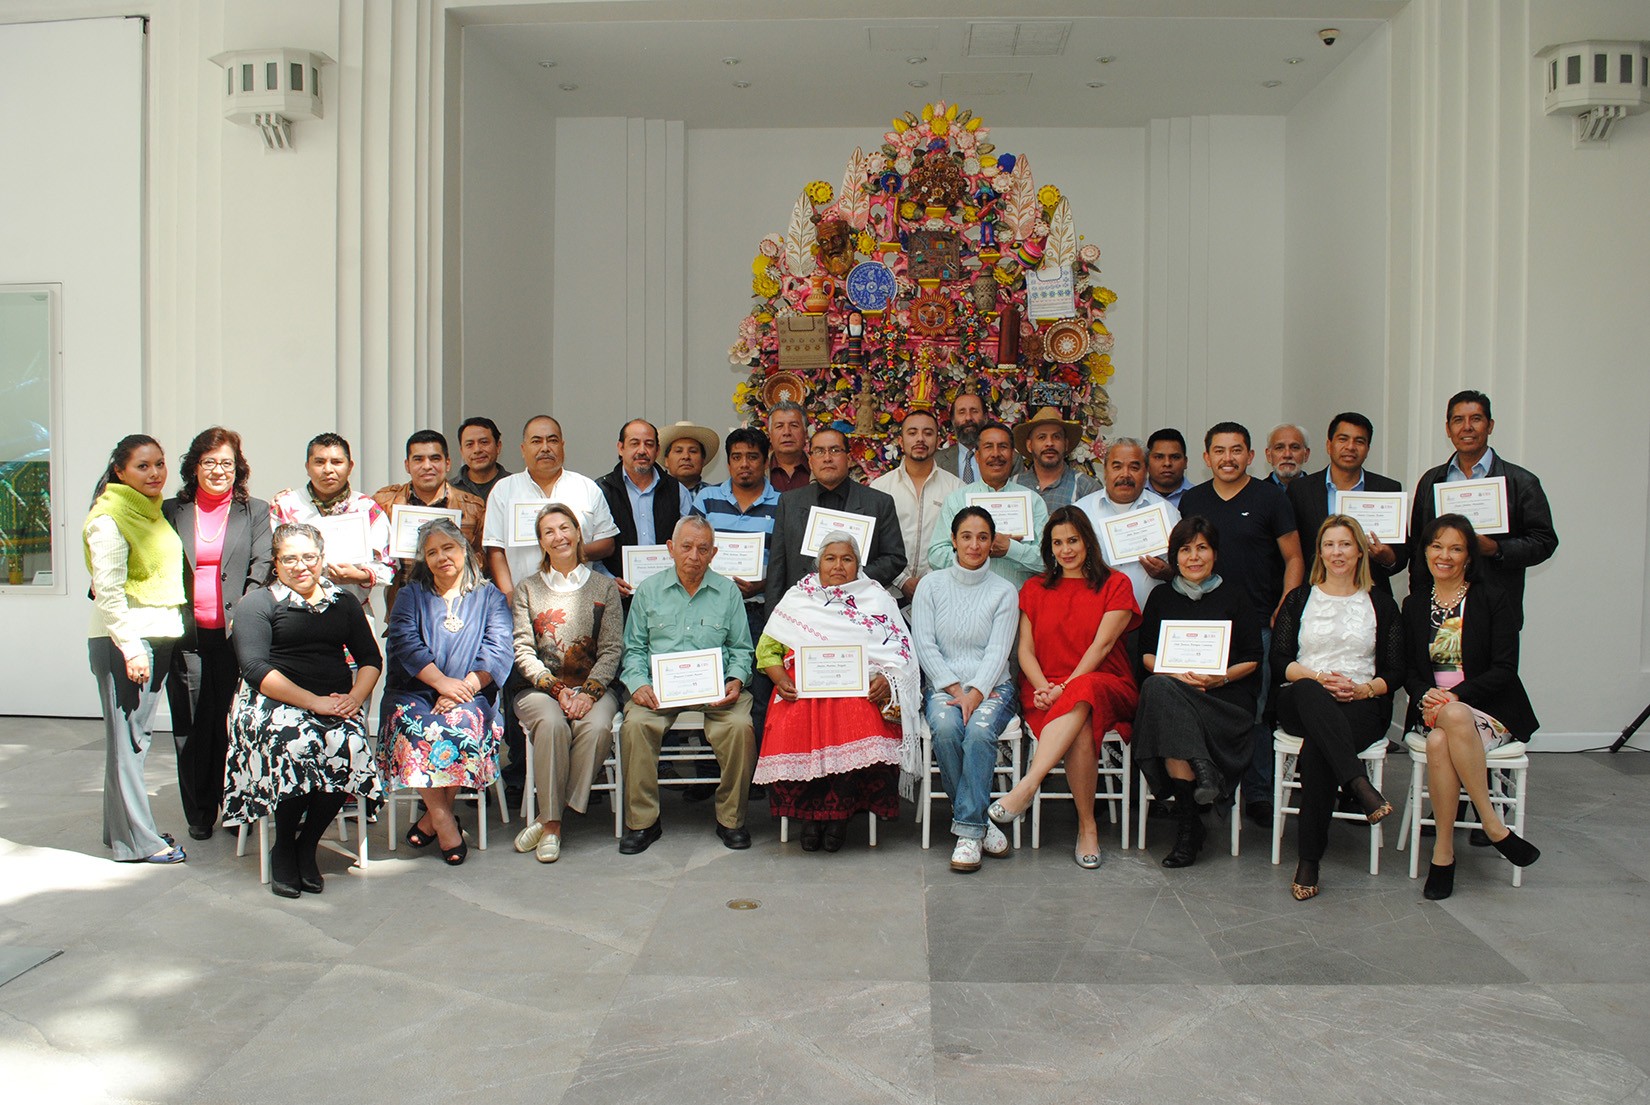 Fotografía grupal de artesanos asistentes a desayuno con el patronato de AmigosMAP en el Museo de Arte Popular en celebración de su décimo aniversario. (Foto: AmigosMAP).